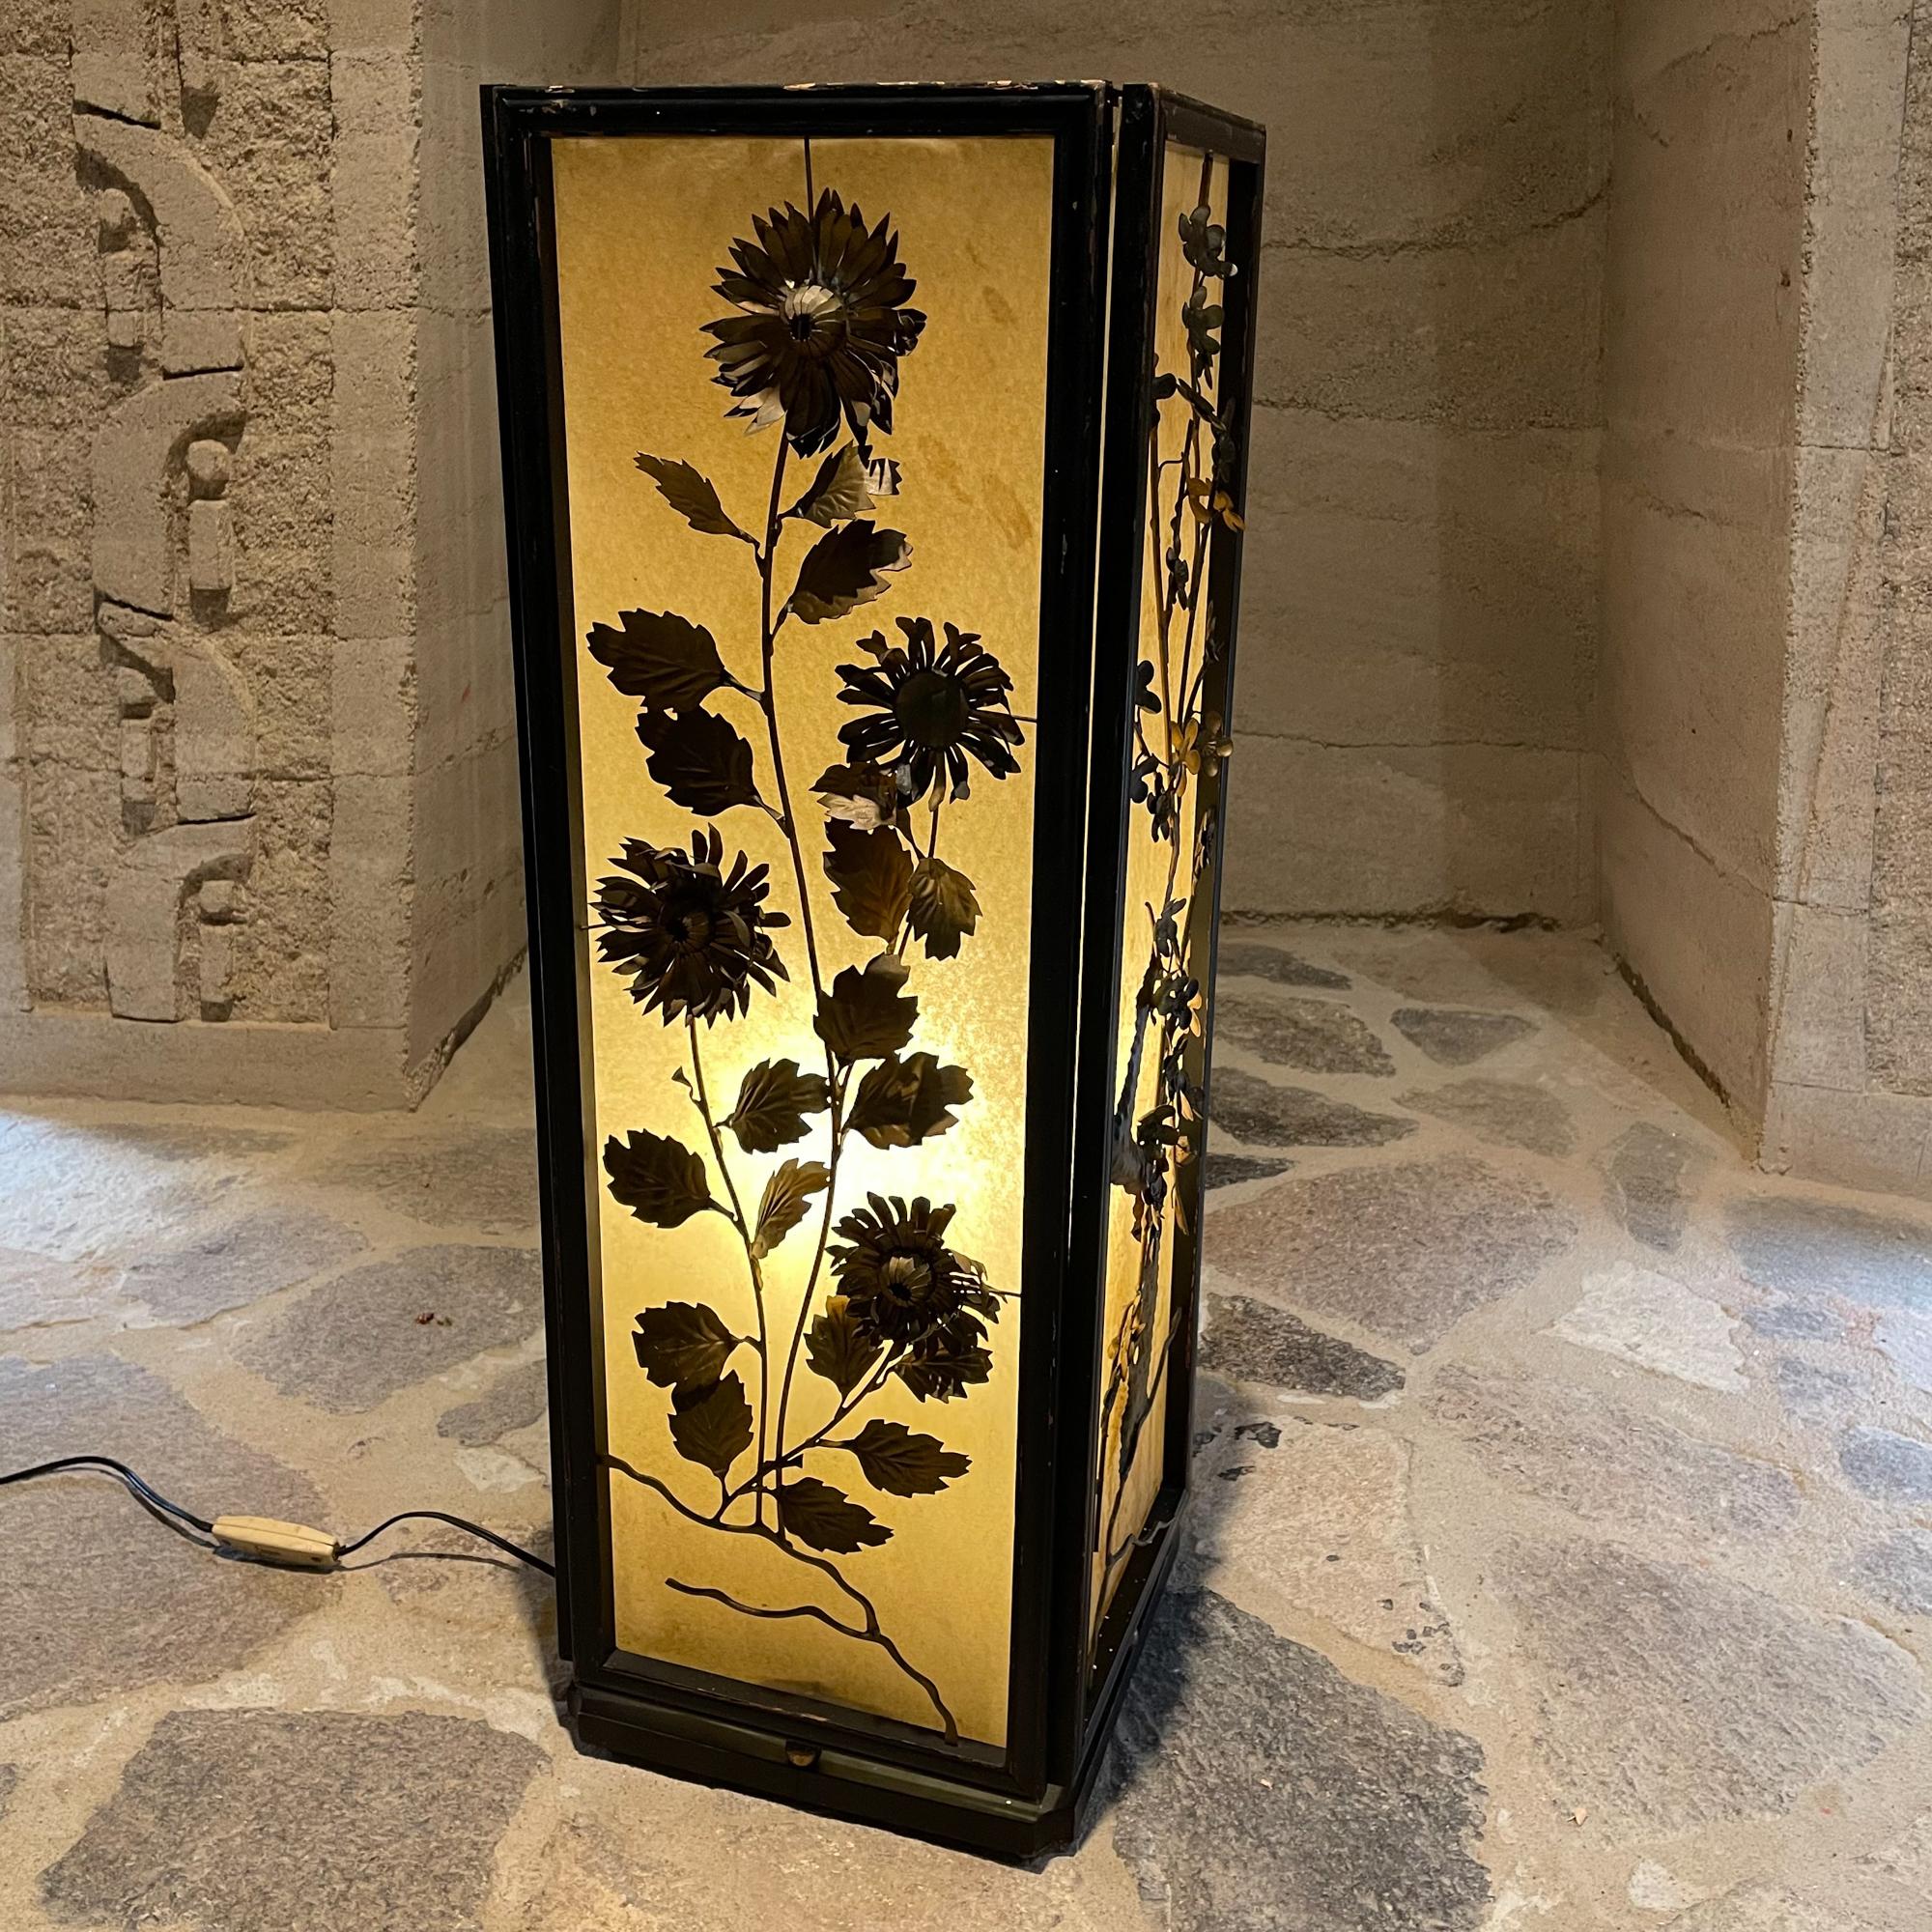 1960s Regency Modern : Lampe lanterne japonaise avec quatre côtés, chacun avec un design floral décoratif en laiton. Extérieur en stratifié plastique jaunâtre. Cadre en bois
Chaque conception de panneau est unique. Voir les images !
Non